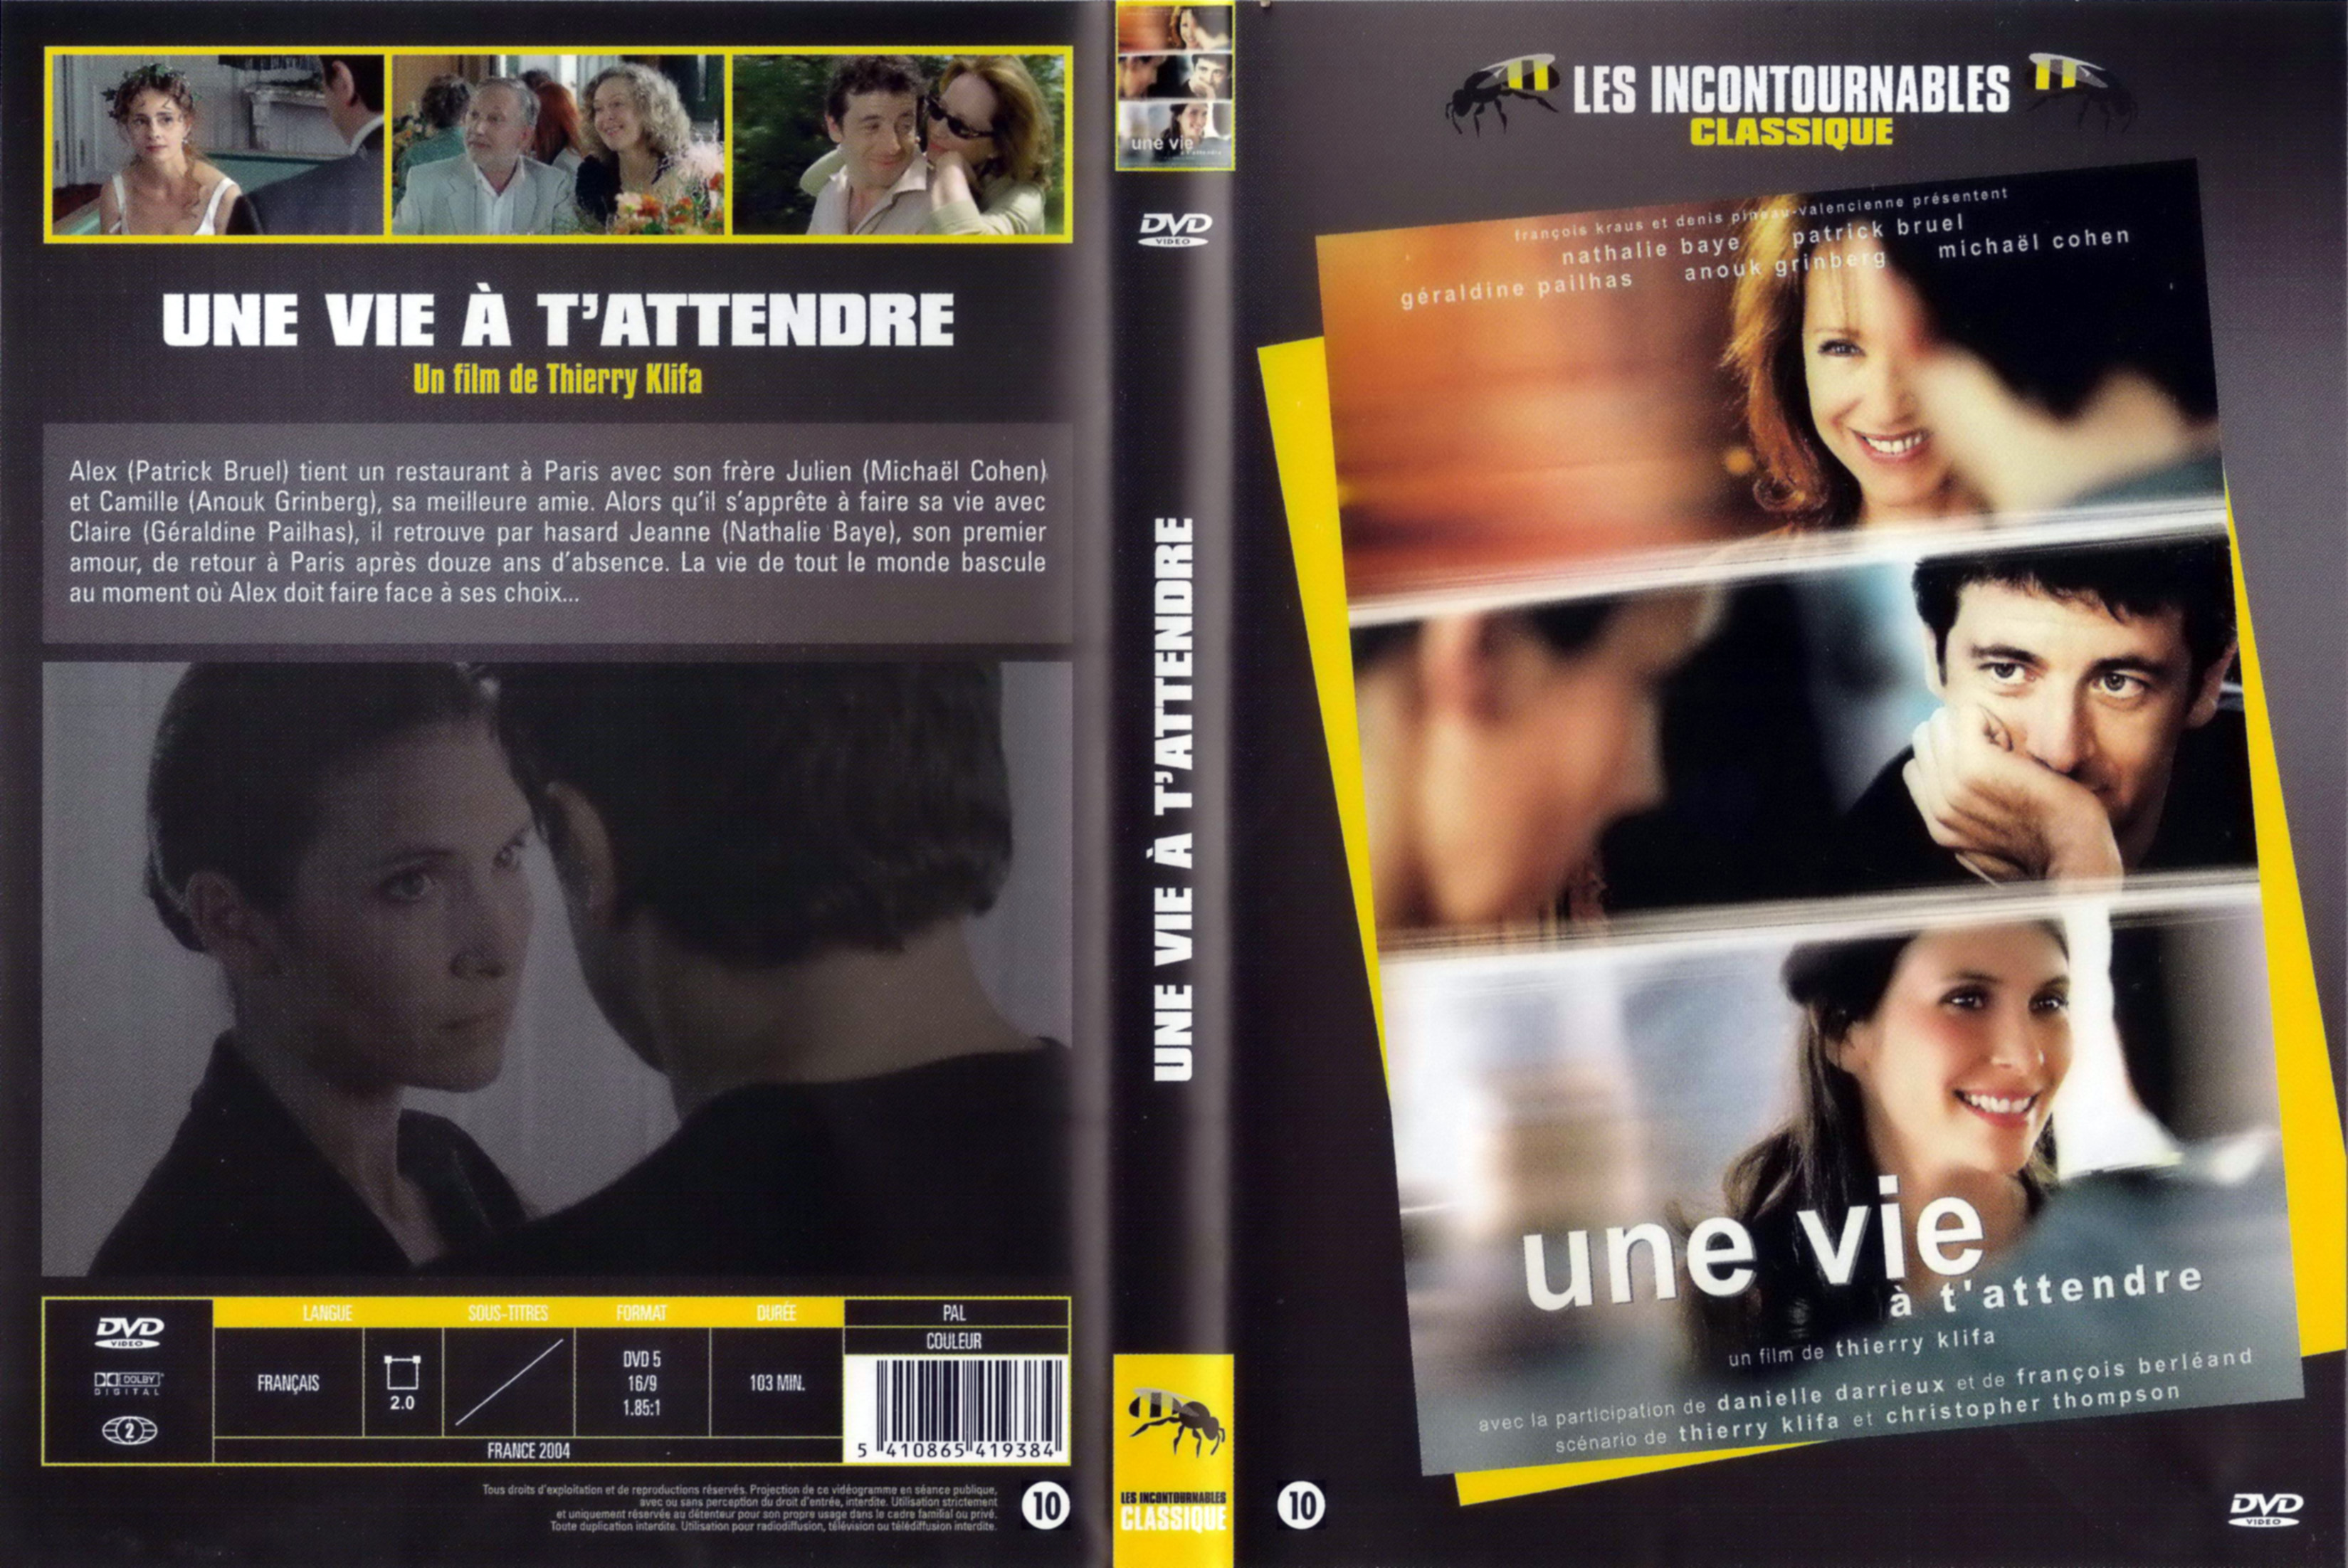 Jaquette DVD Une vie  t